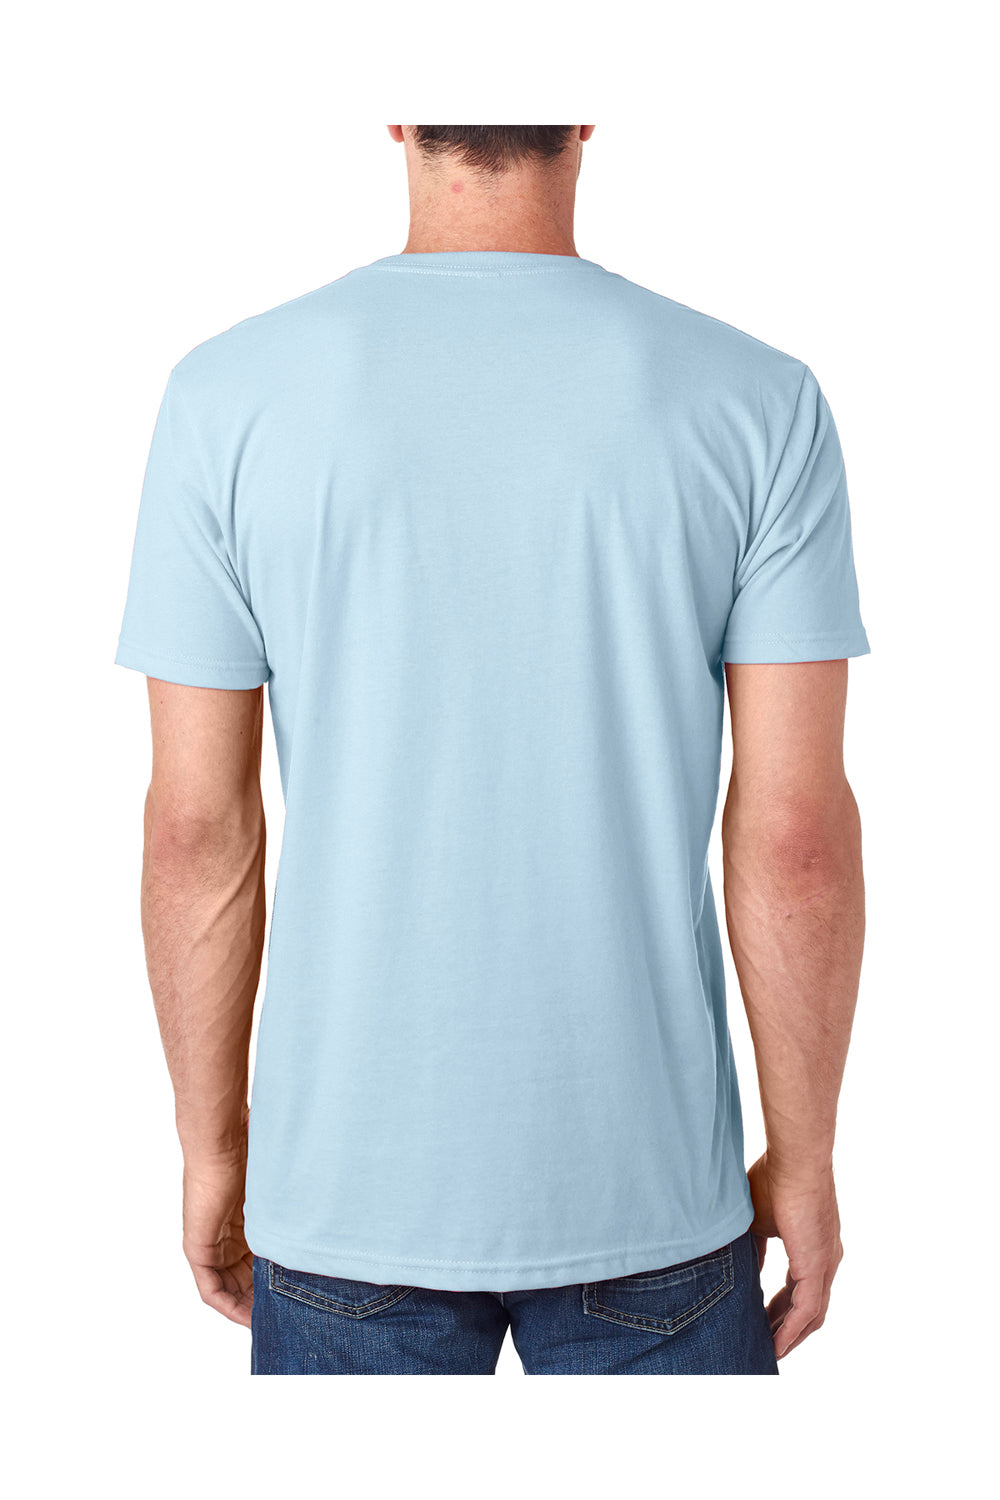 Next Level 6440 Mens Sueded Jersey Short Sleeve V-Neck T-Shirt Light Blue Back